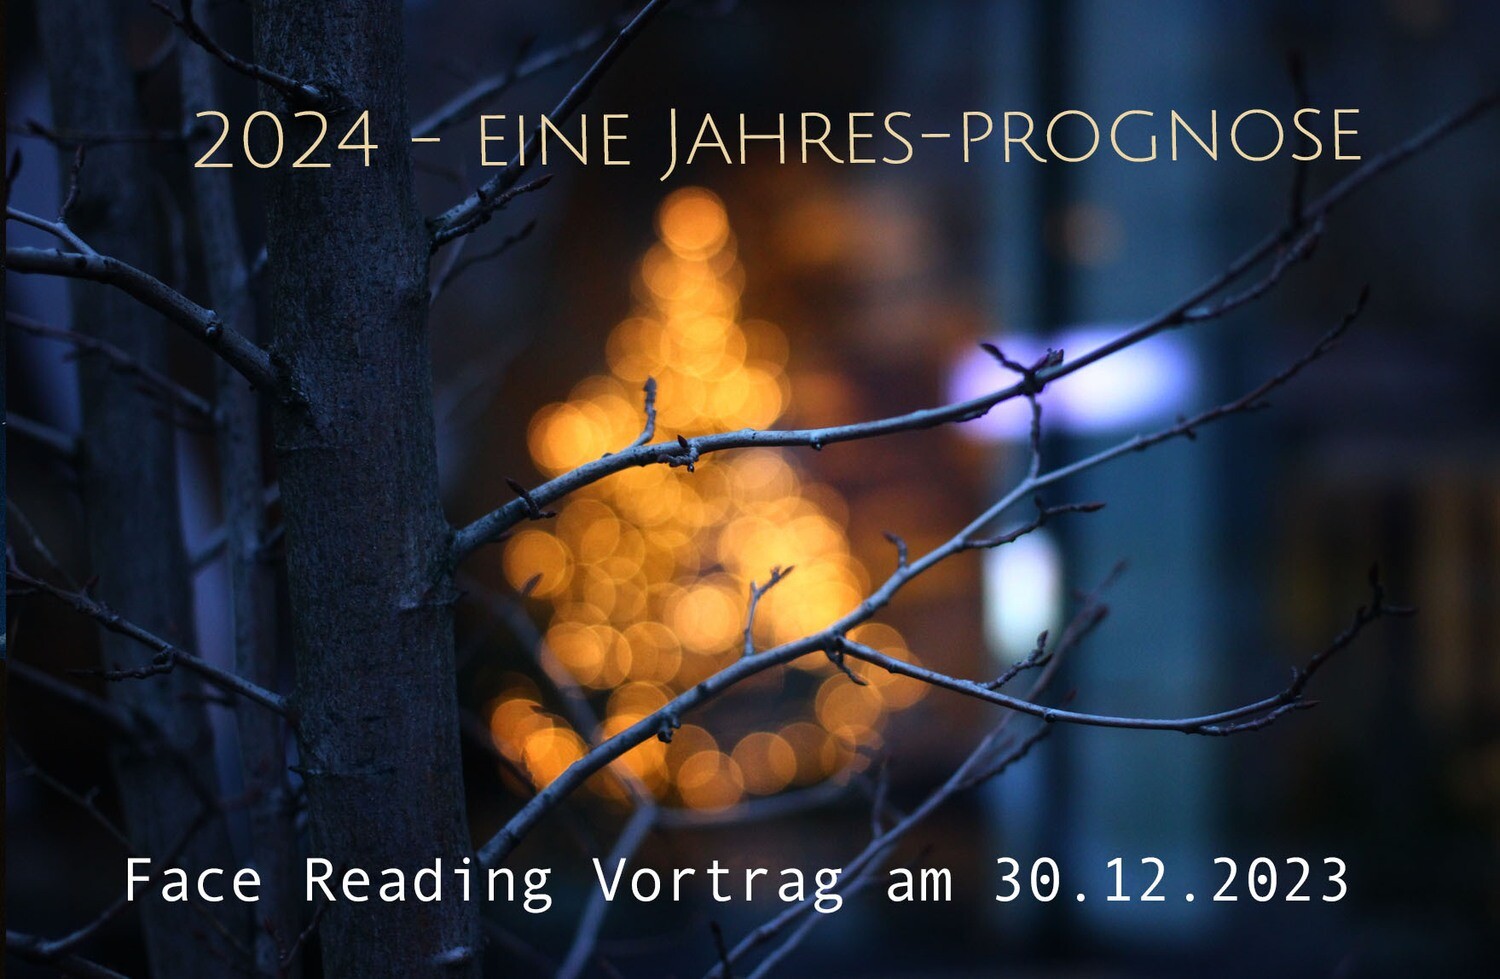 Online Video Vortrag 2024 – Eine Jahres-Prognose mit Face Reading